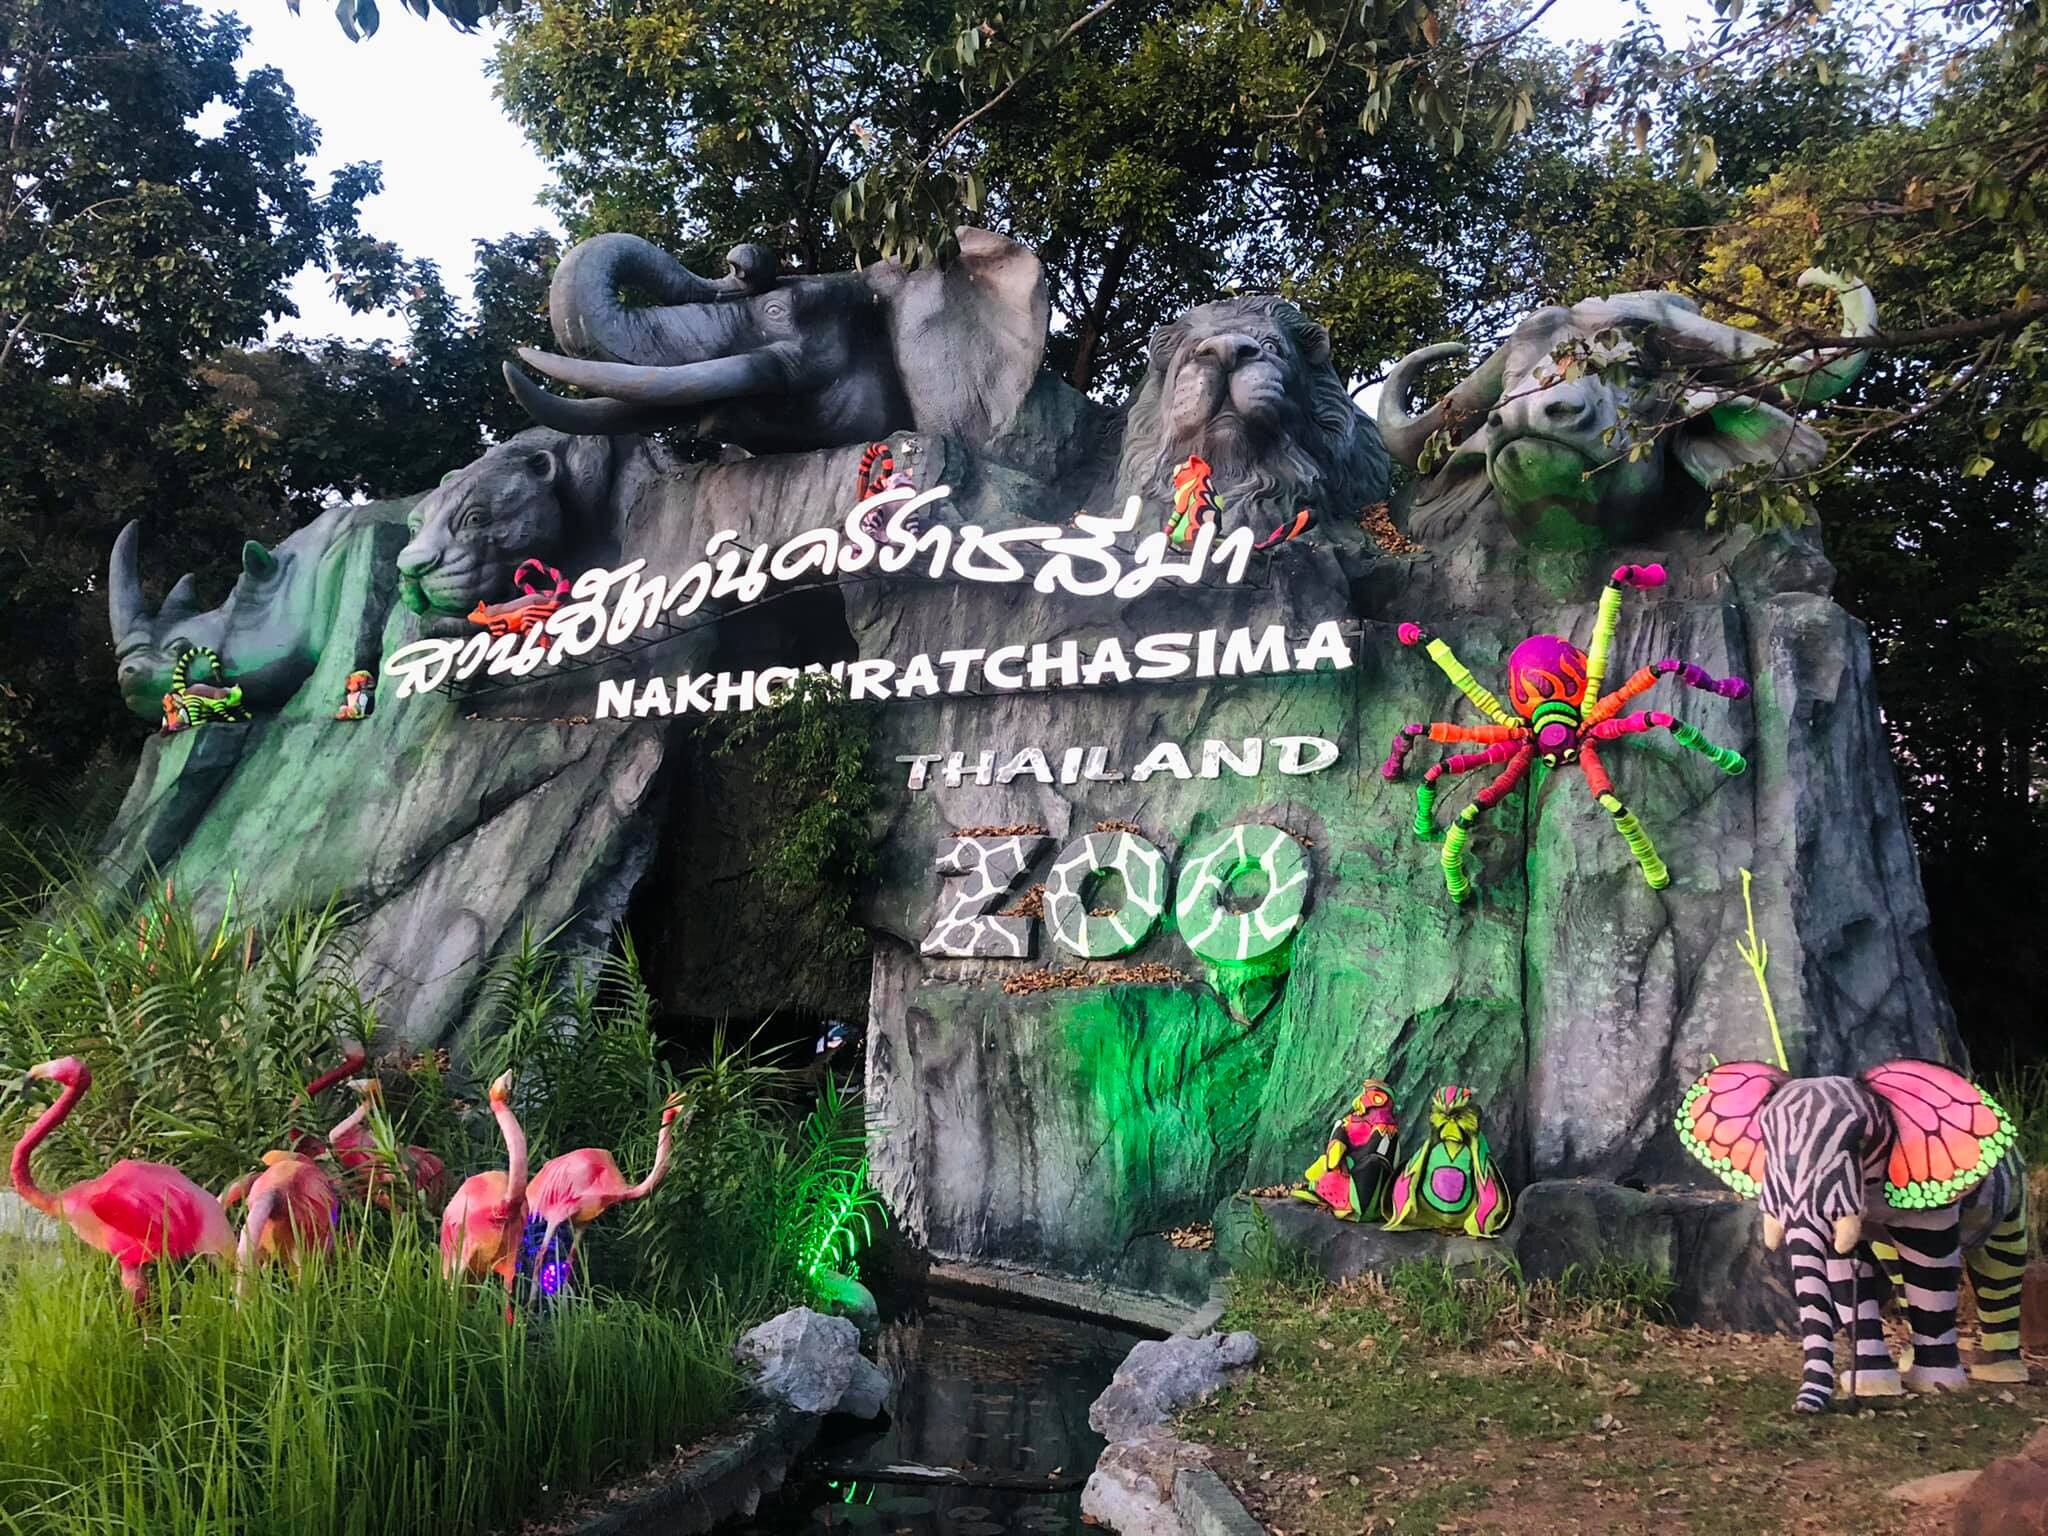 สวนสัตว์นครราชสีมา เตรียมพร้อมให้บริการจุดแวะพัก Rest Area รูปแบบสัตว์ป่าเรืองแสง "Mini Light Zoo"